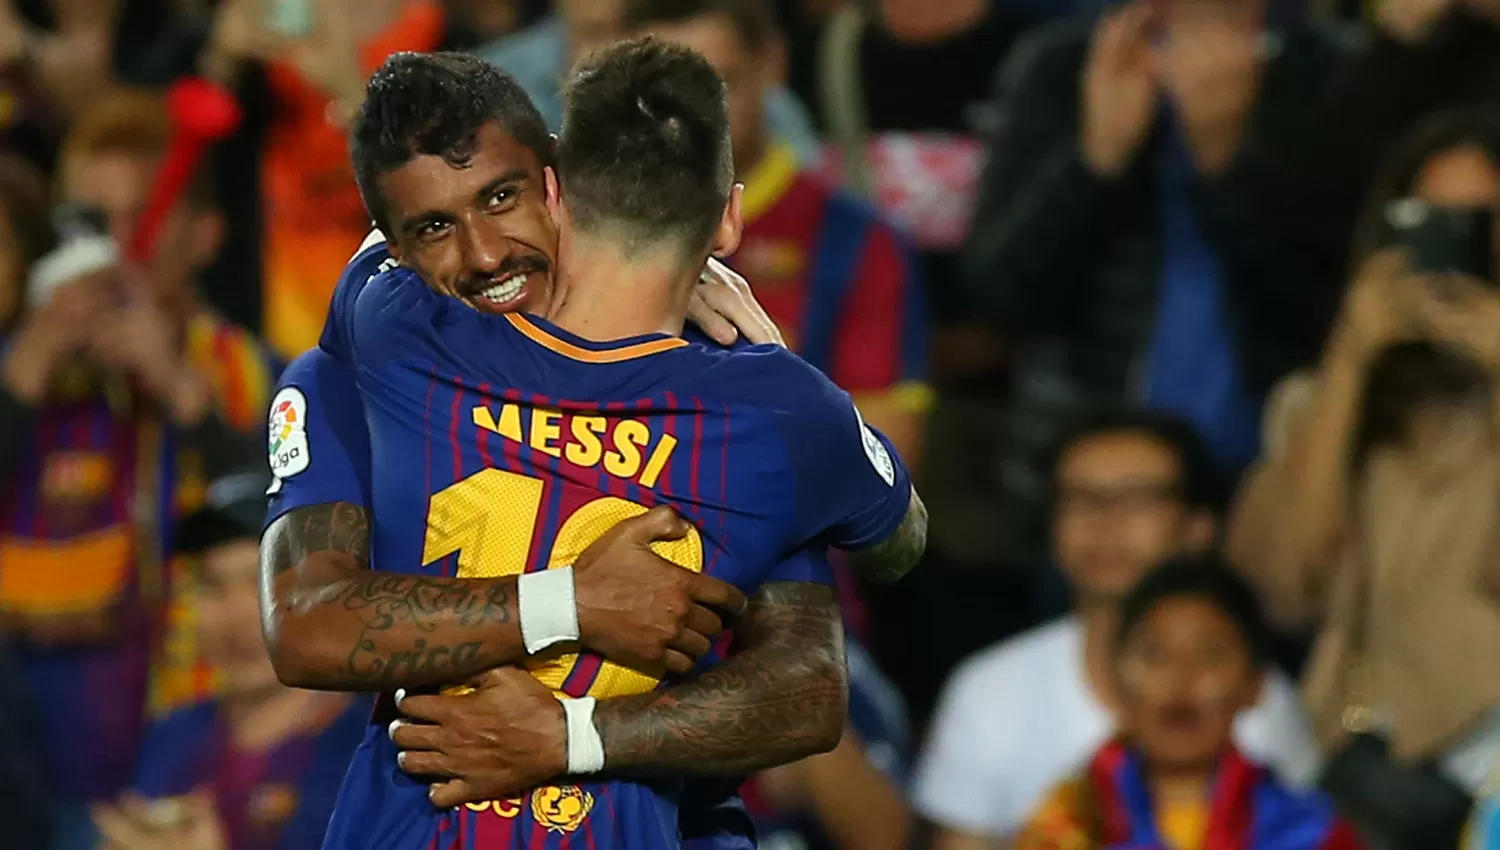 El abrazo entre Messi y Paulinho, que marcó su segundo gol en Barcelona.
REUTERS